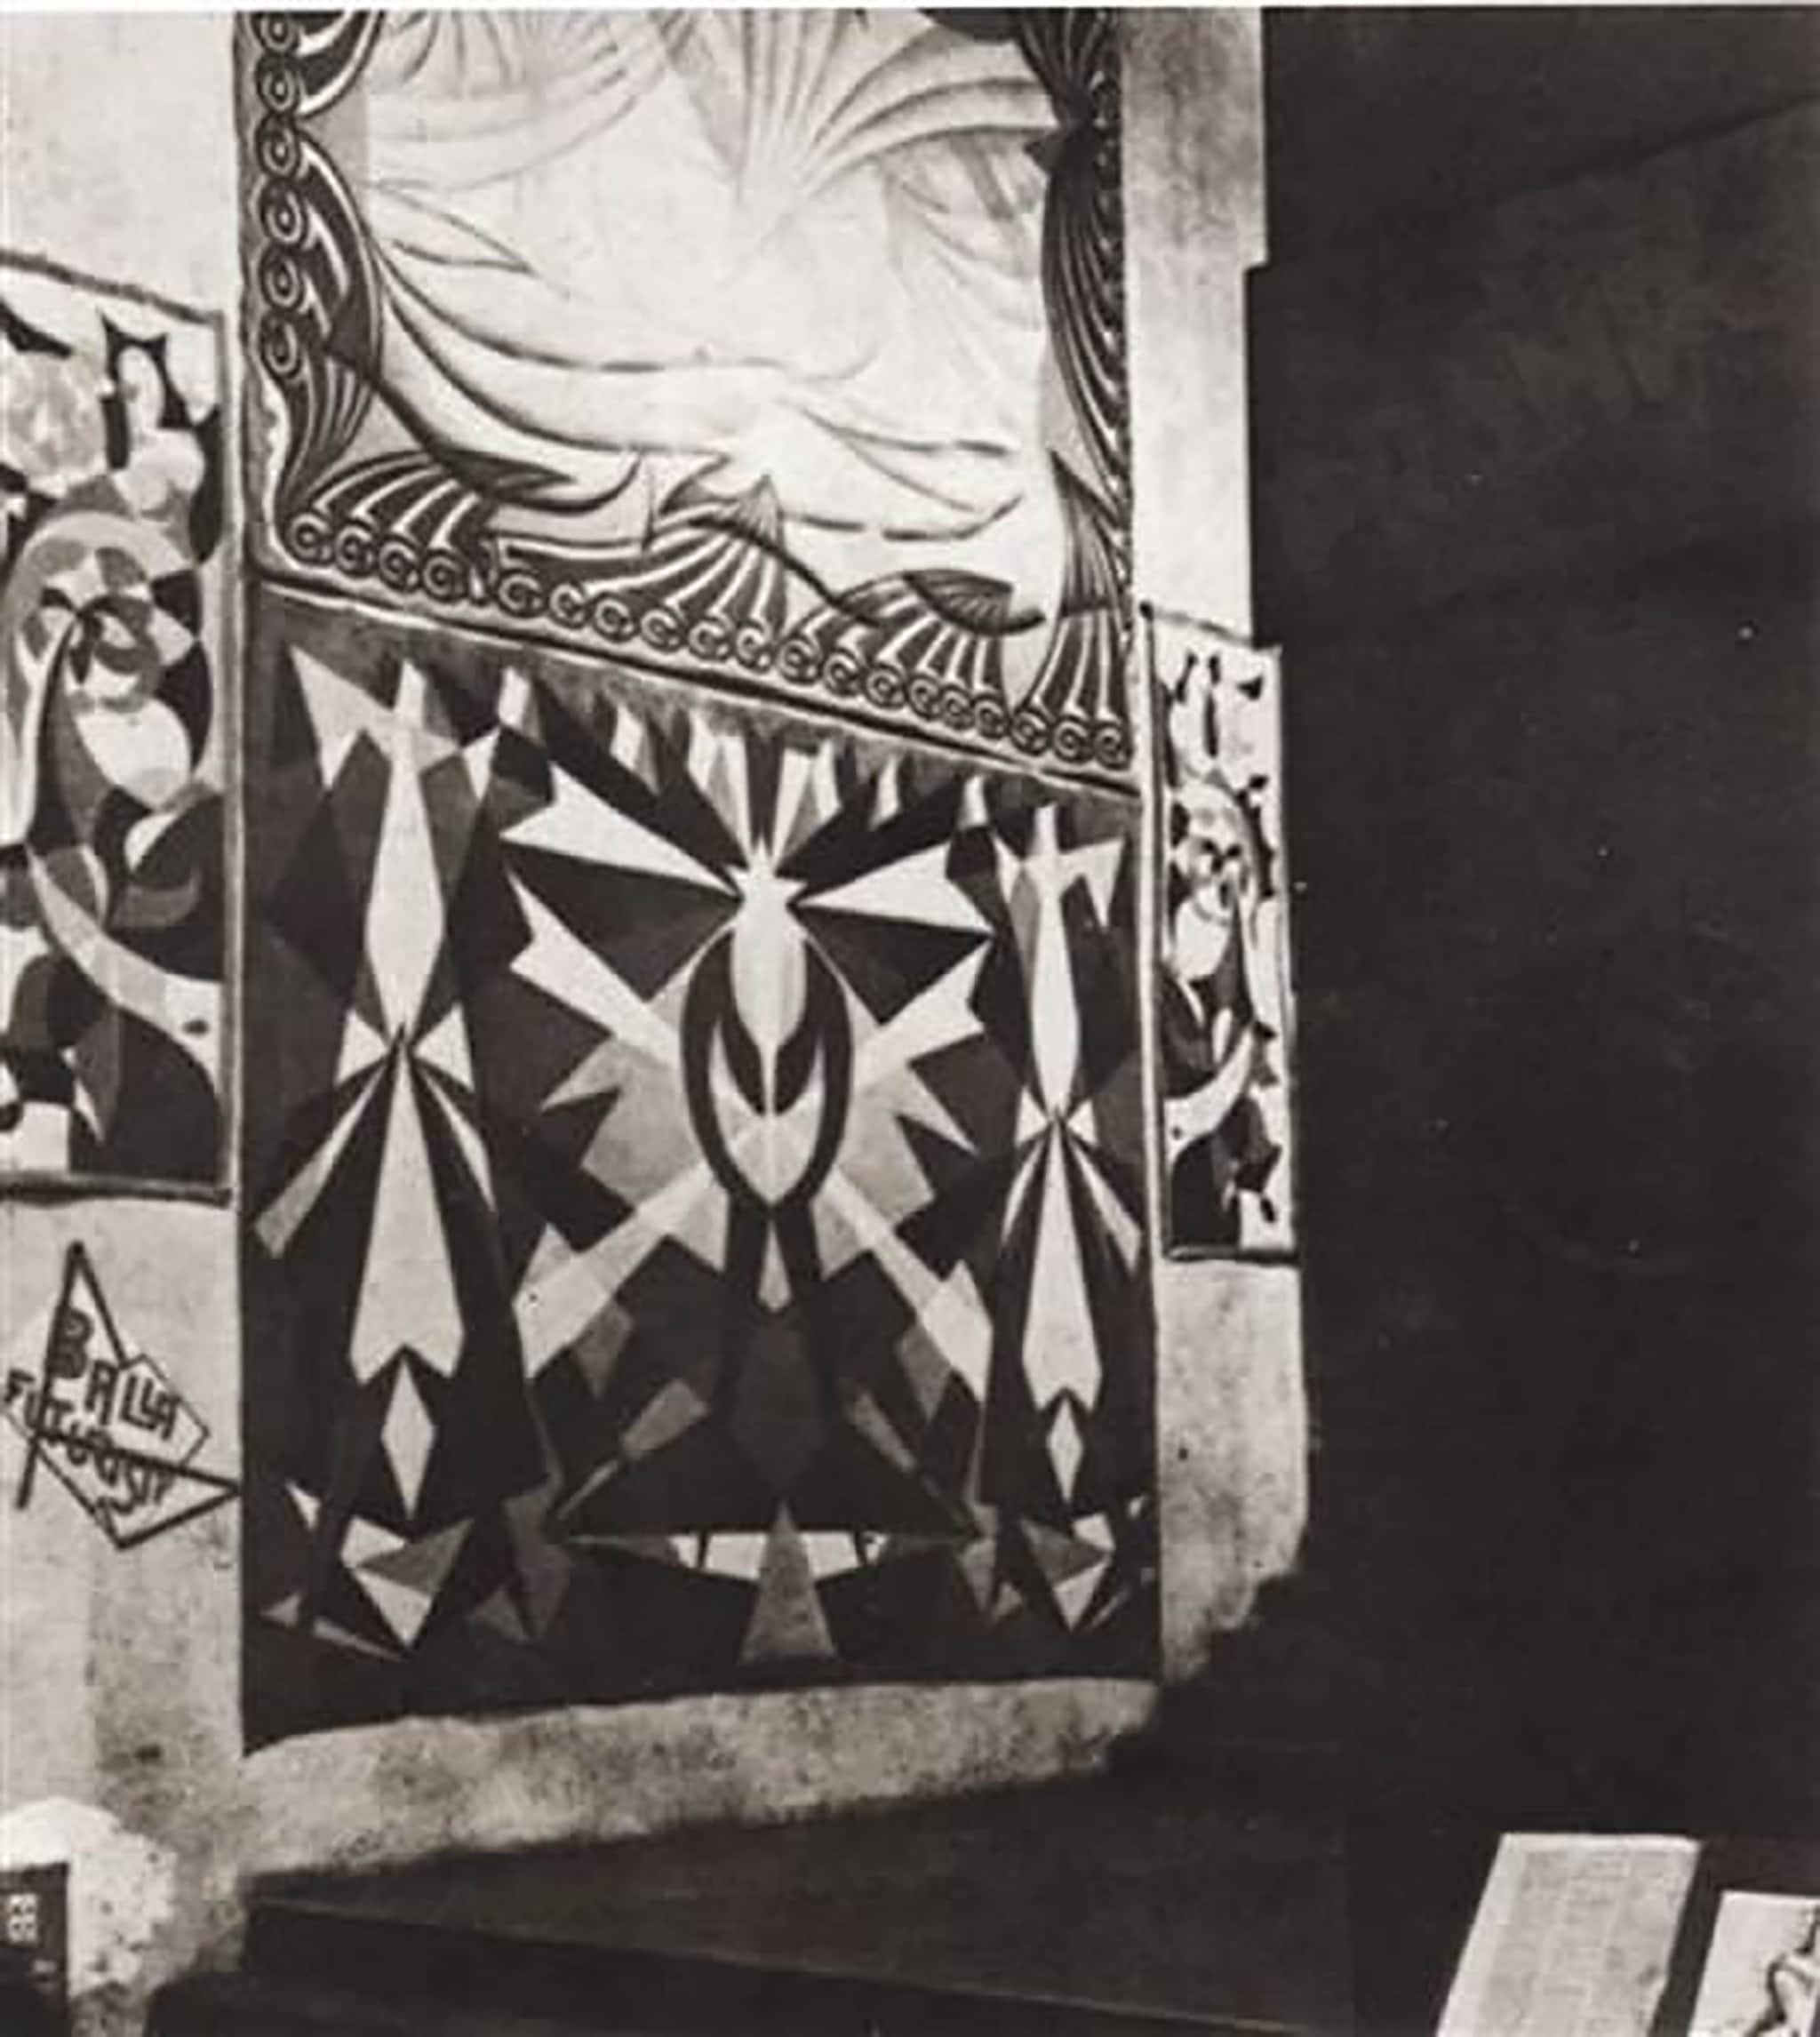  Foto dell’allestimento delle tele d’arazzo "Mare velivolato" e "Genio Futurista" esposte all’Exposition Internationale des Arts Decoratifs a Parigi nel giugno 1925. 